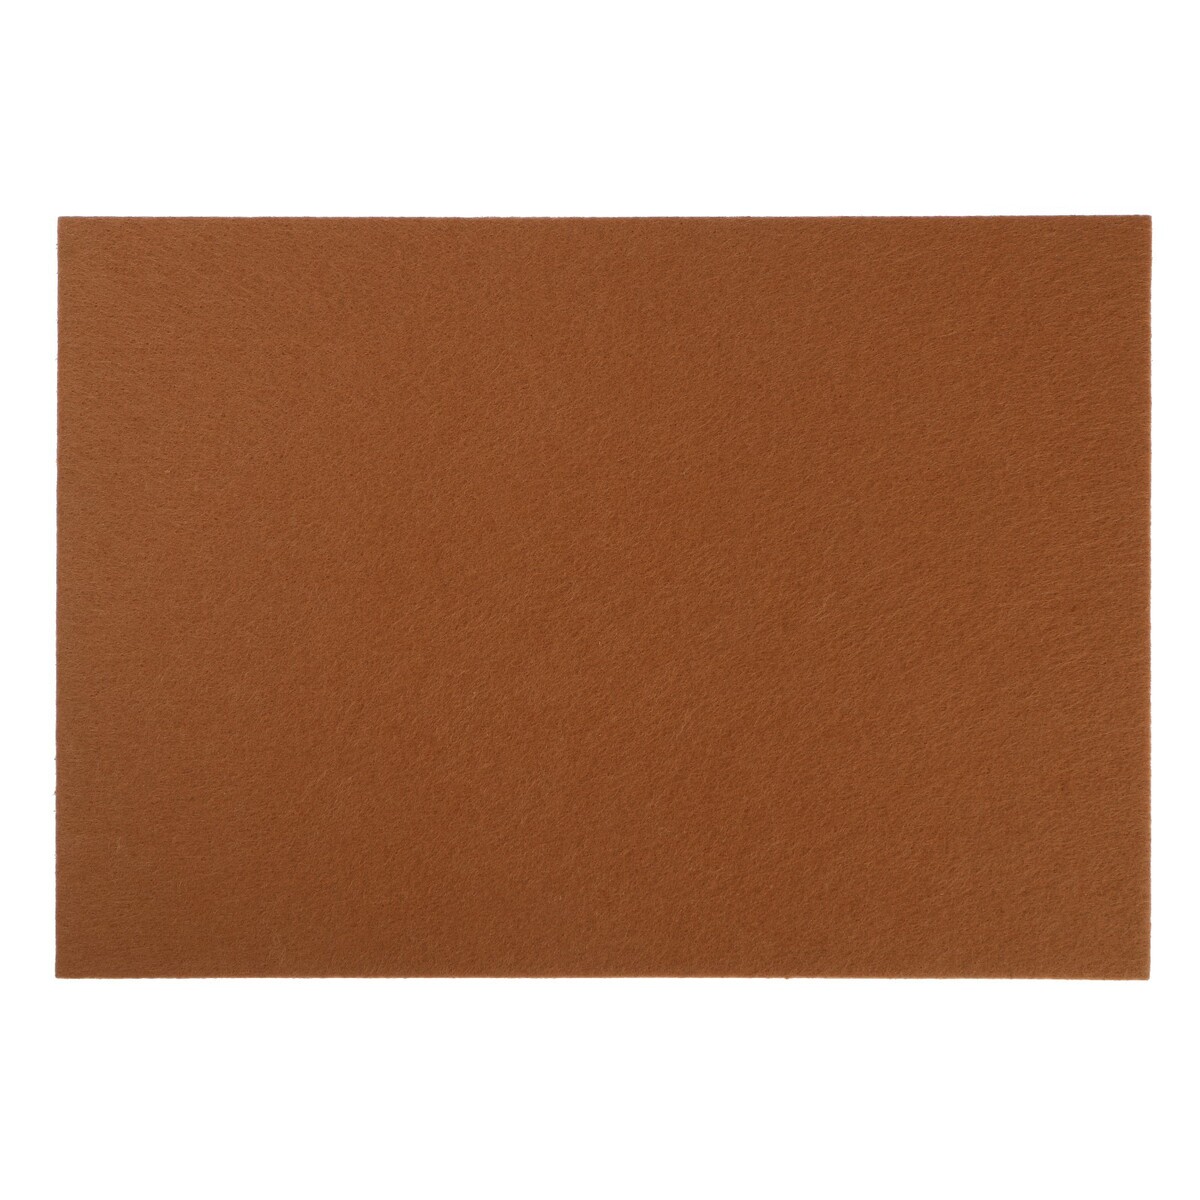 Накладка для мебели из войлока, 210х300 мм, клейкая поверхность, цвет светло-коричневый комплект для перетяжки мебели 50 × 100 см иск кожа поролон 20 мм коричневый